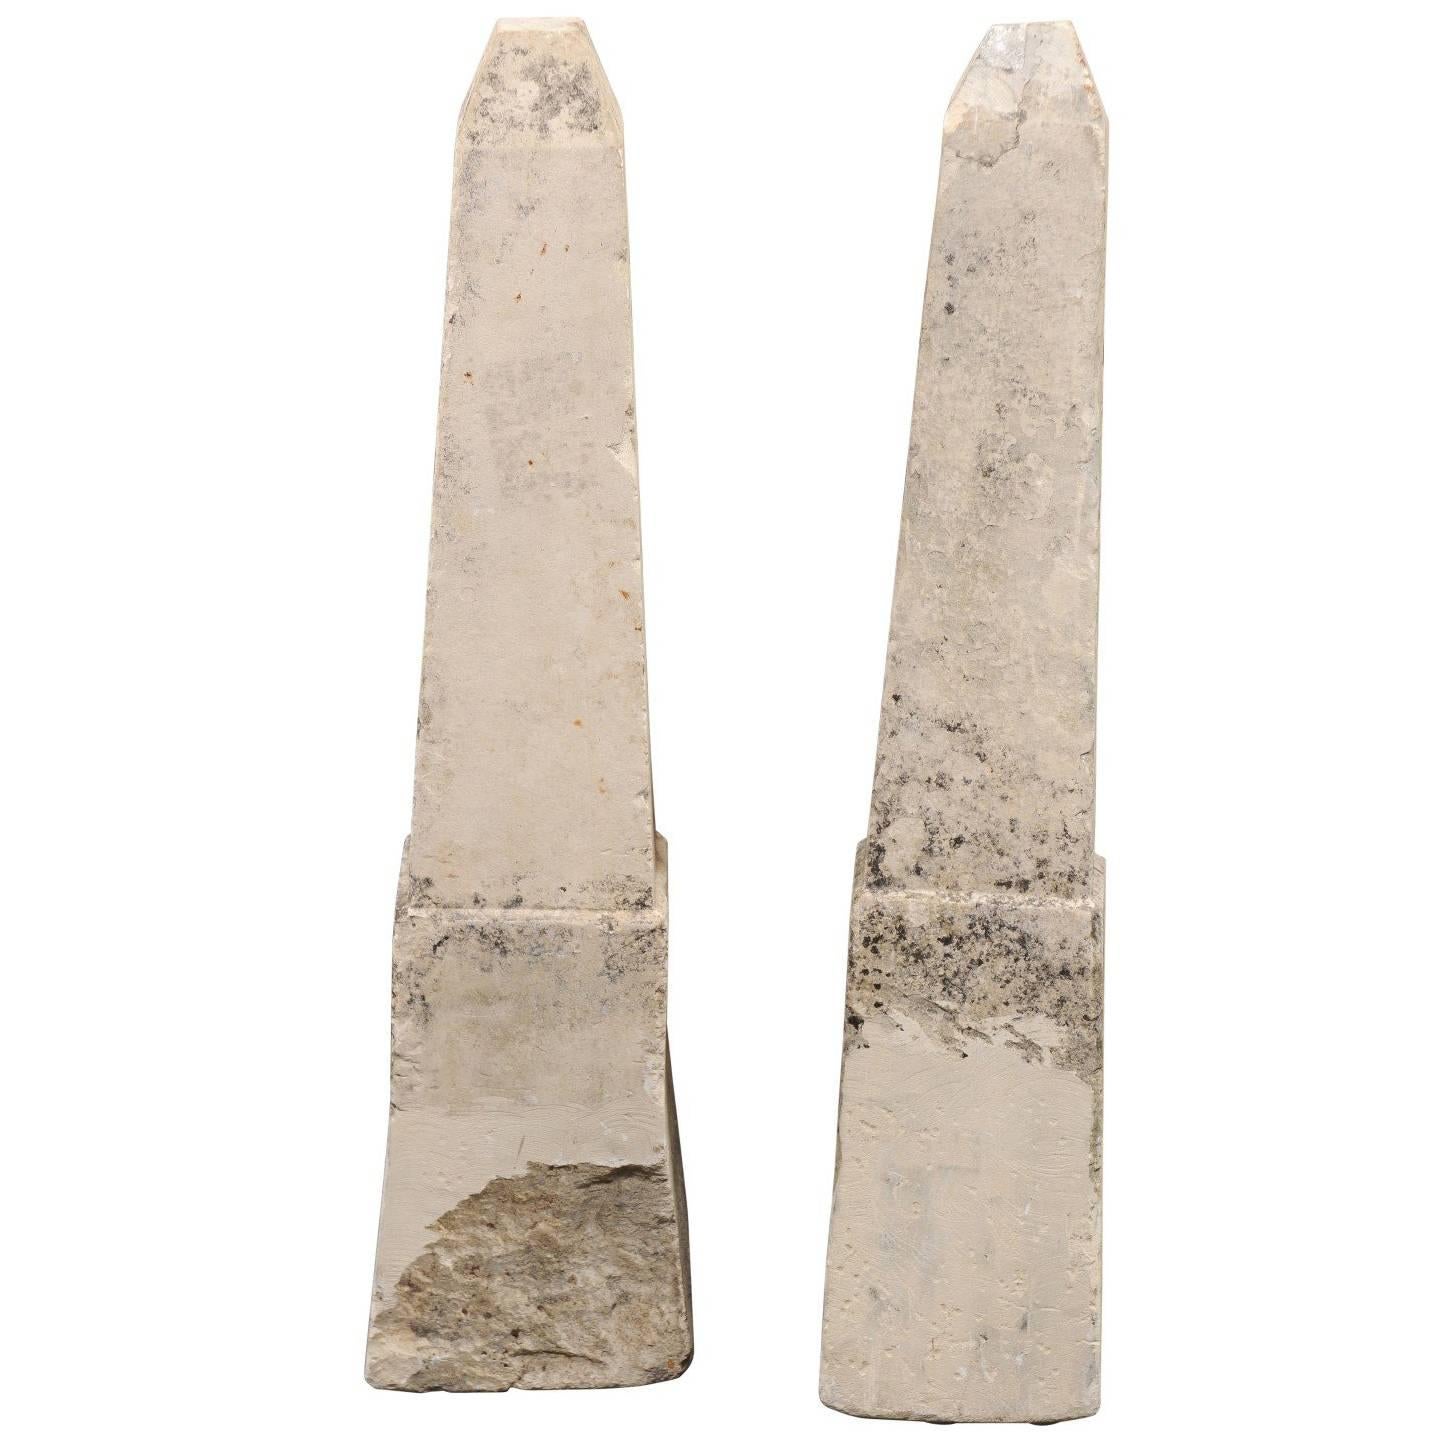 Paar französische Obelisken aus Stein aus dem 19. Jahrhundert, möglicherweise für den Garten